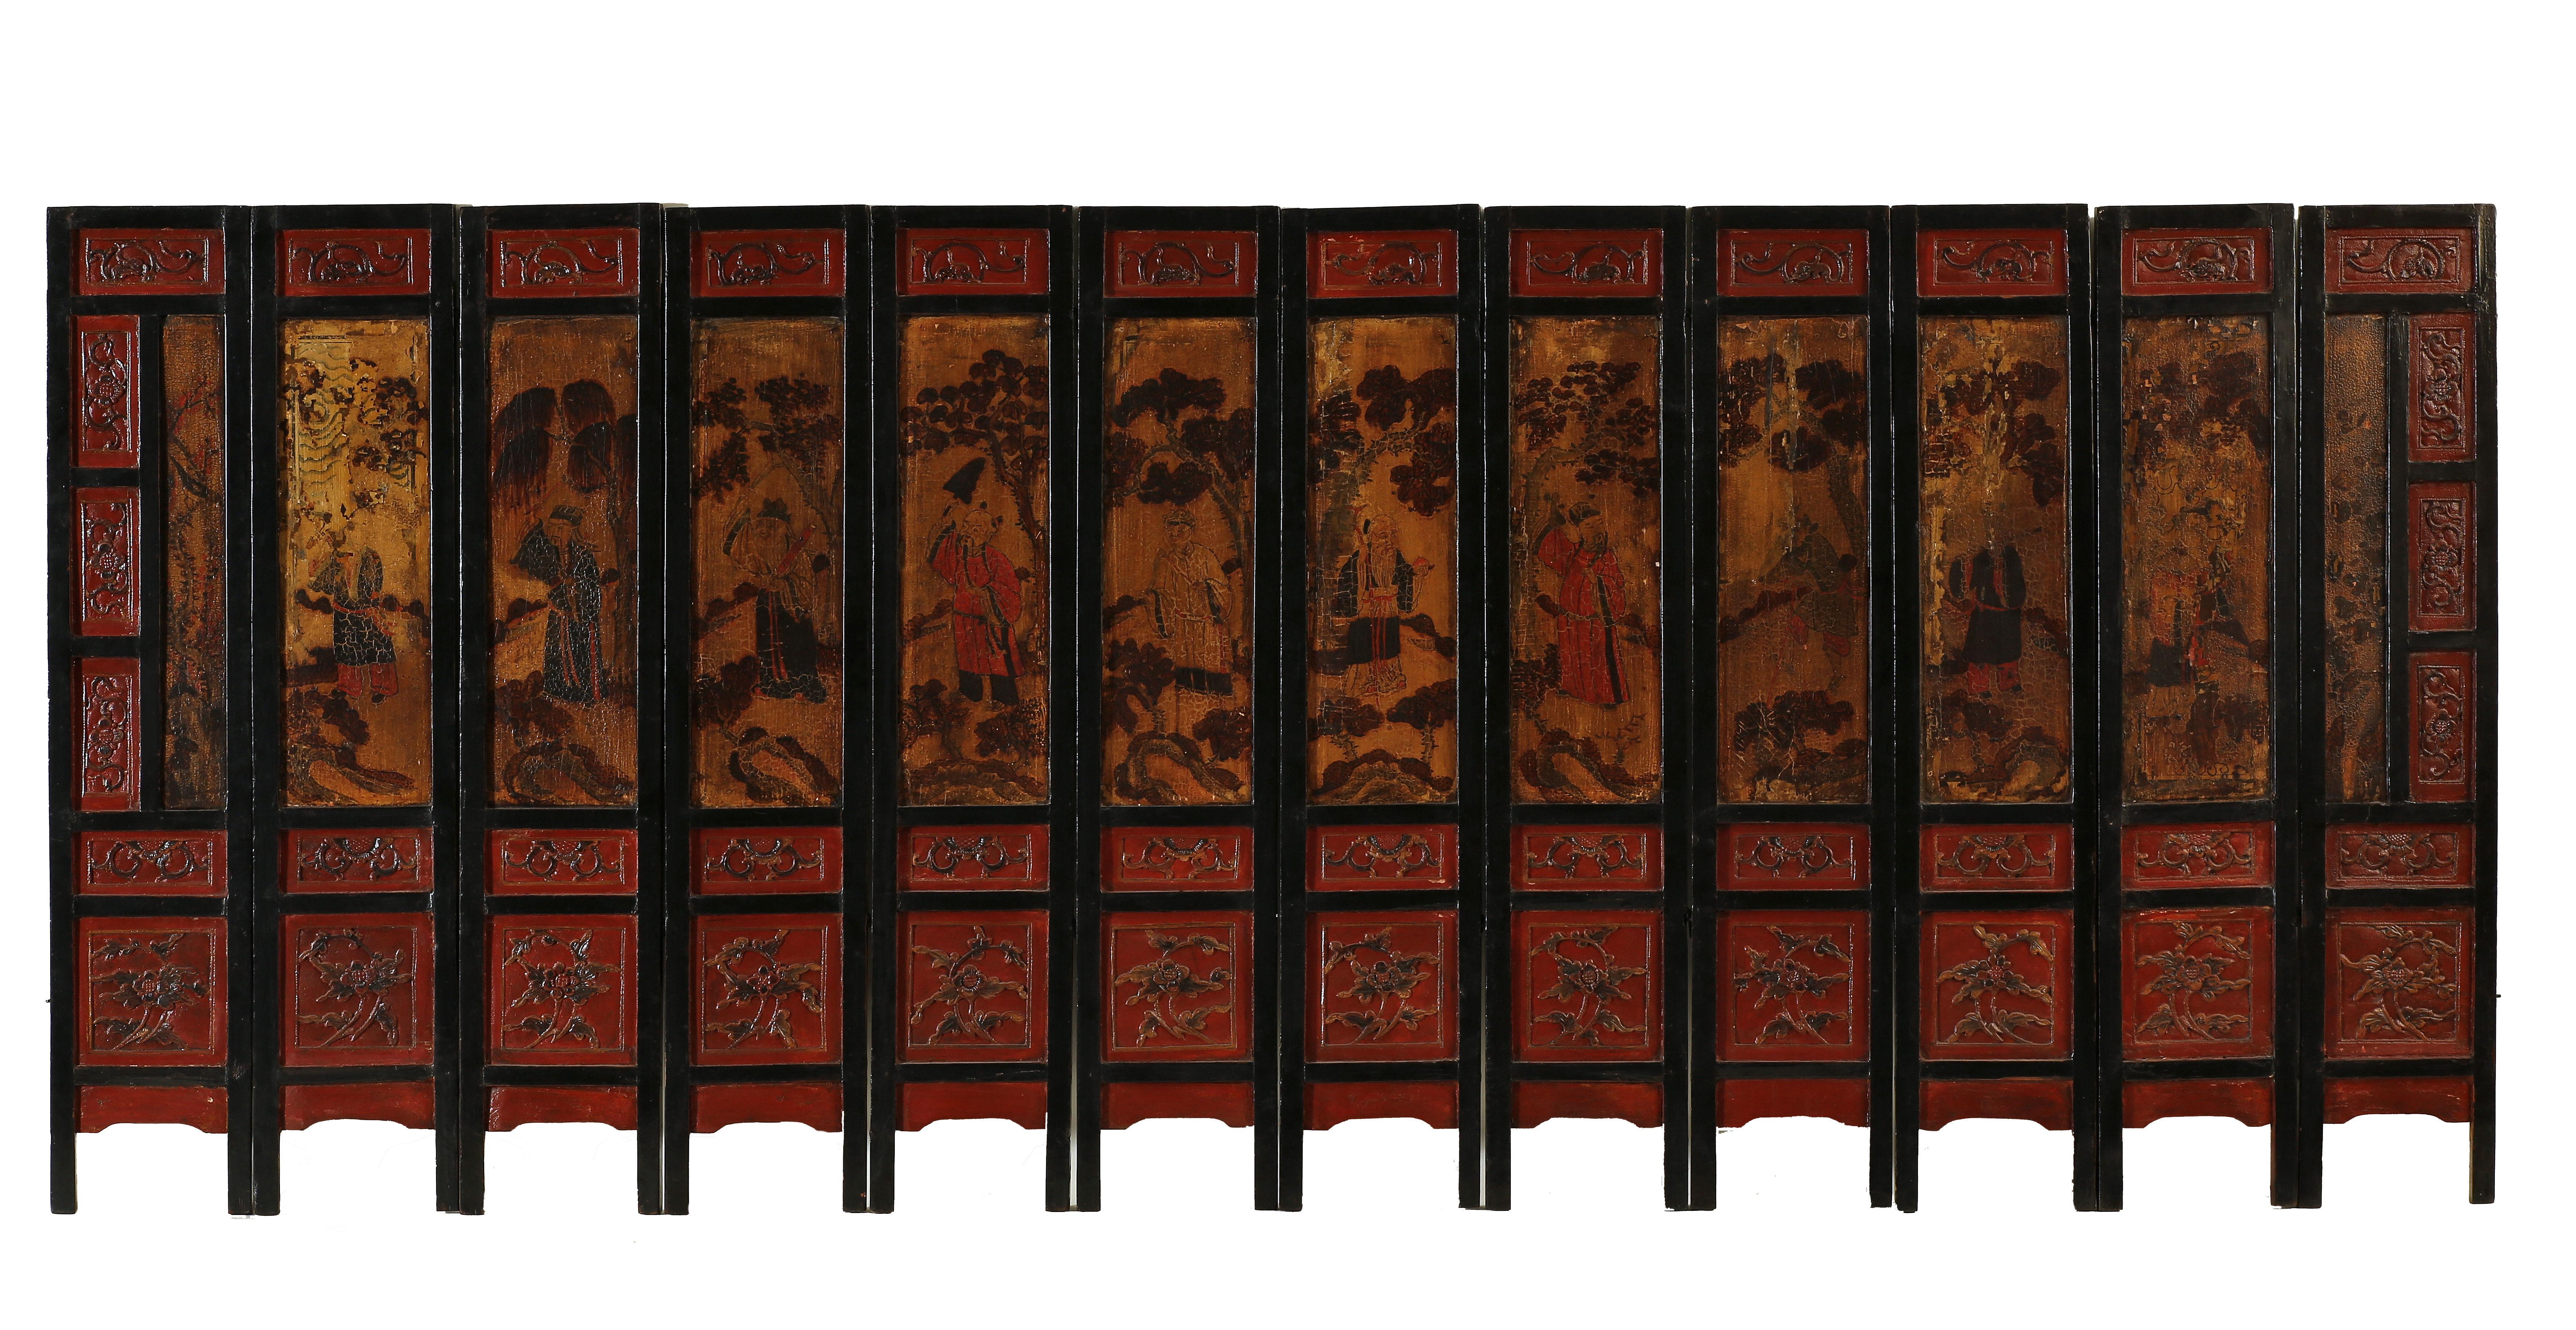 Panneaux-écrans des tables commémoratives

Ensemble rare de panneaux à double face en sections avec, d'un côté, 8 immortels et une peinture scénique et des motifs floraux sculptés en relief et, de l'autre côté, 8 immortels et des motifs floraux en